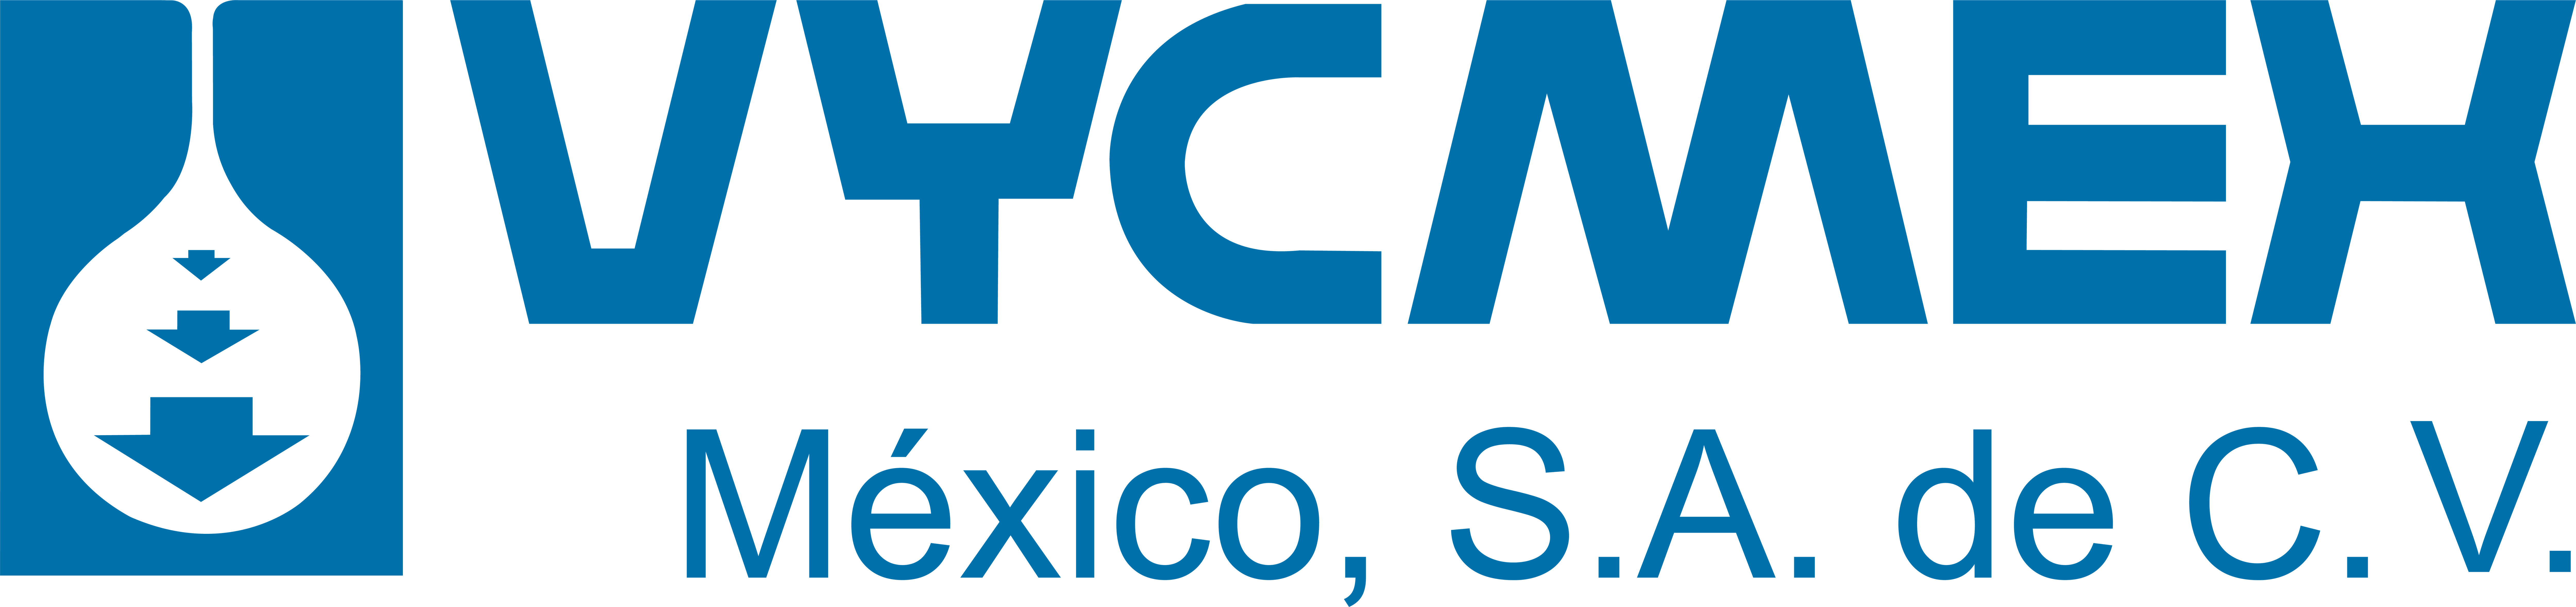 VYCMEX MEXICO S.A. DE C.V.